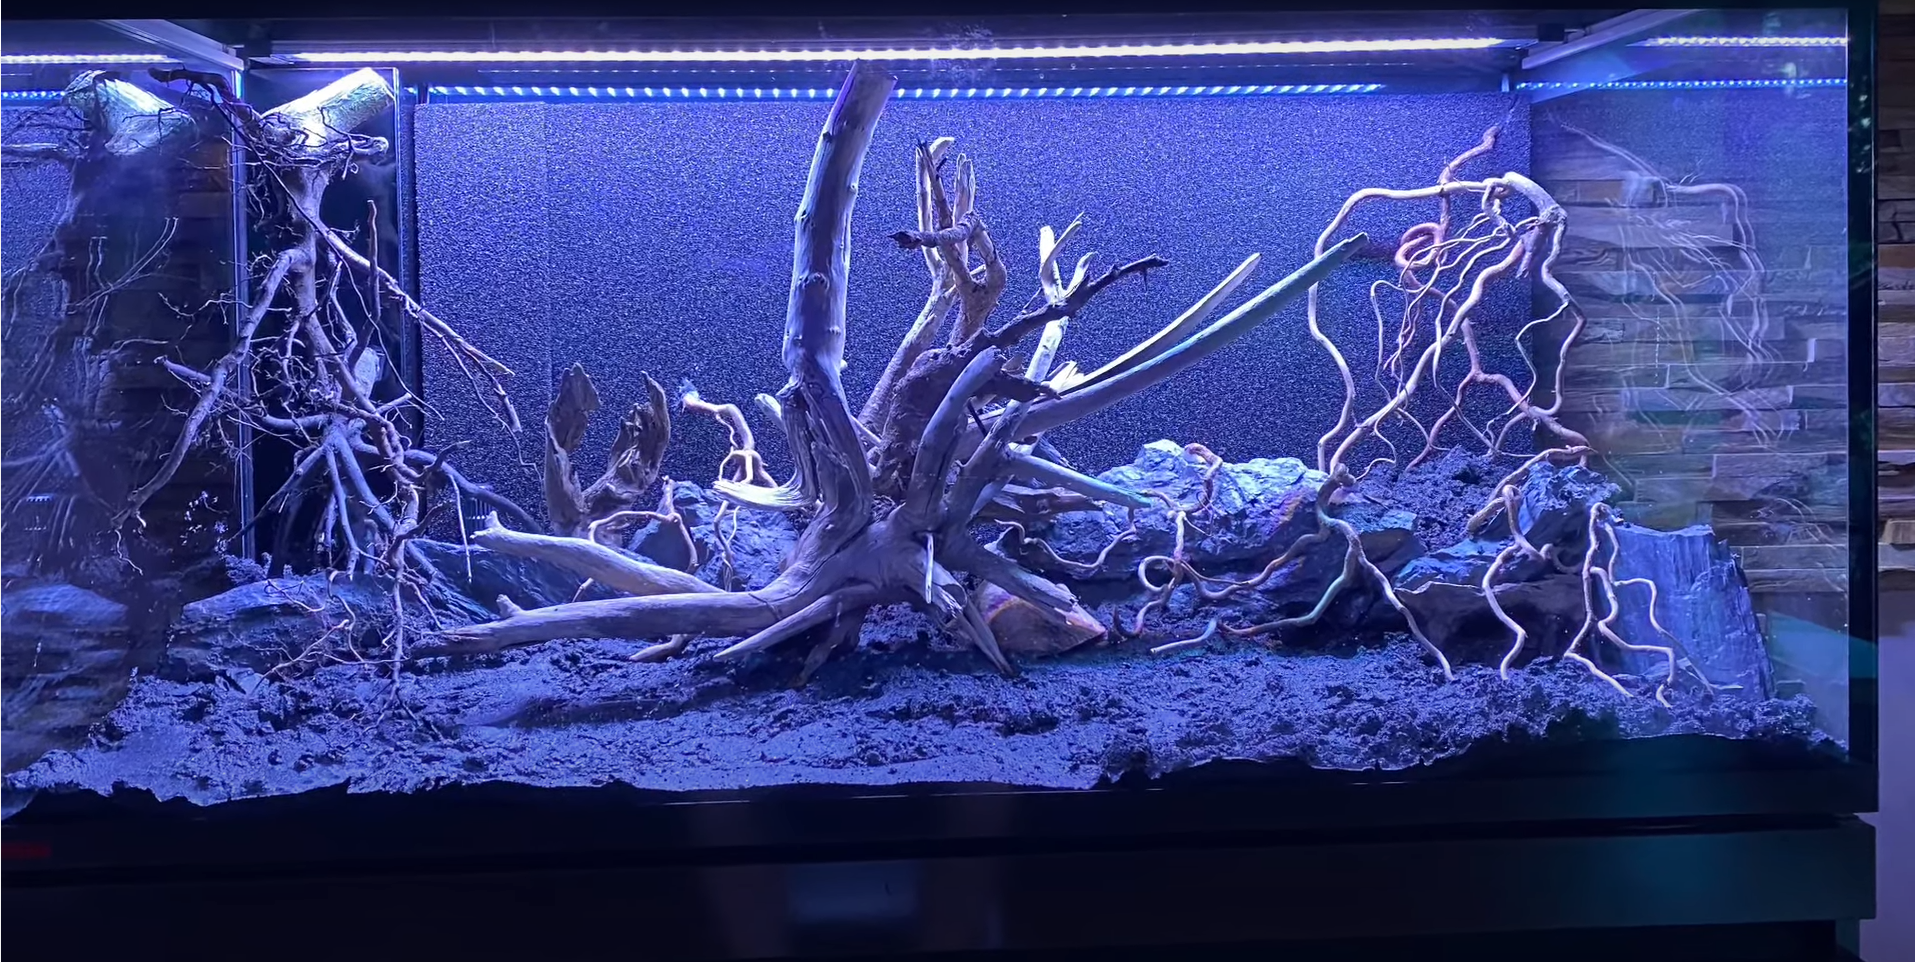 Eingerichtetes Aquarium mit Pflanzen und Steinen